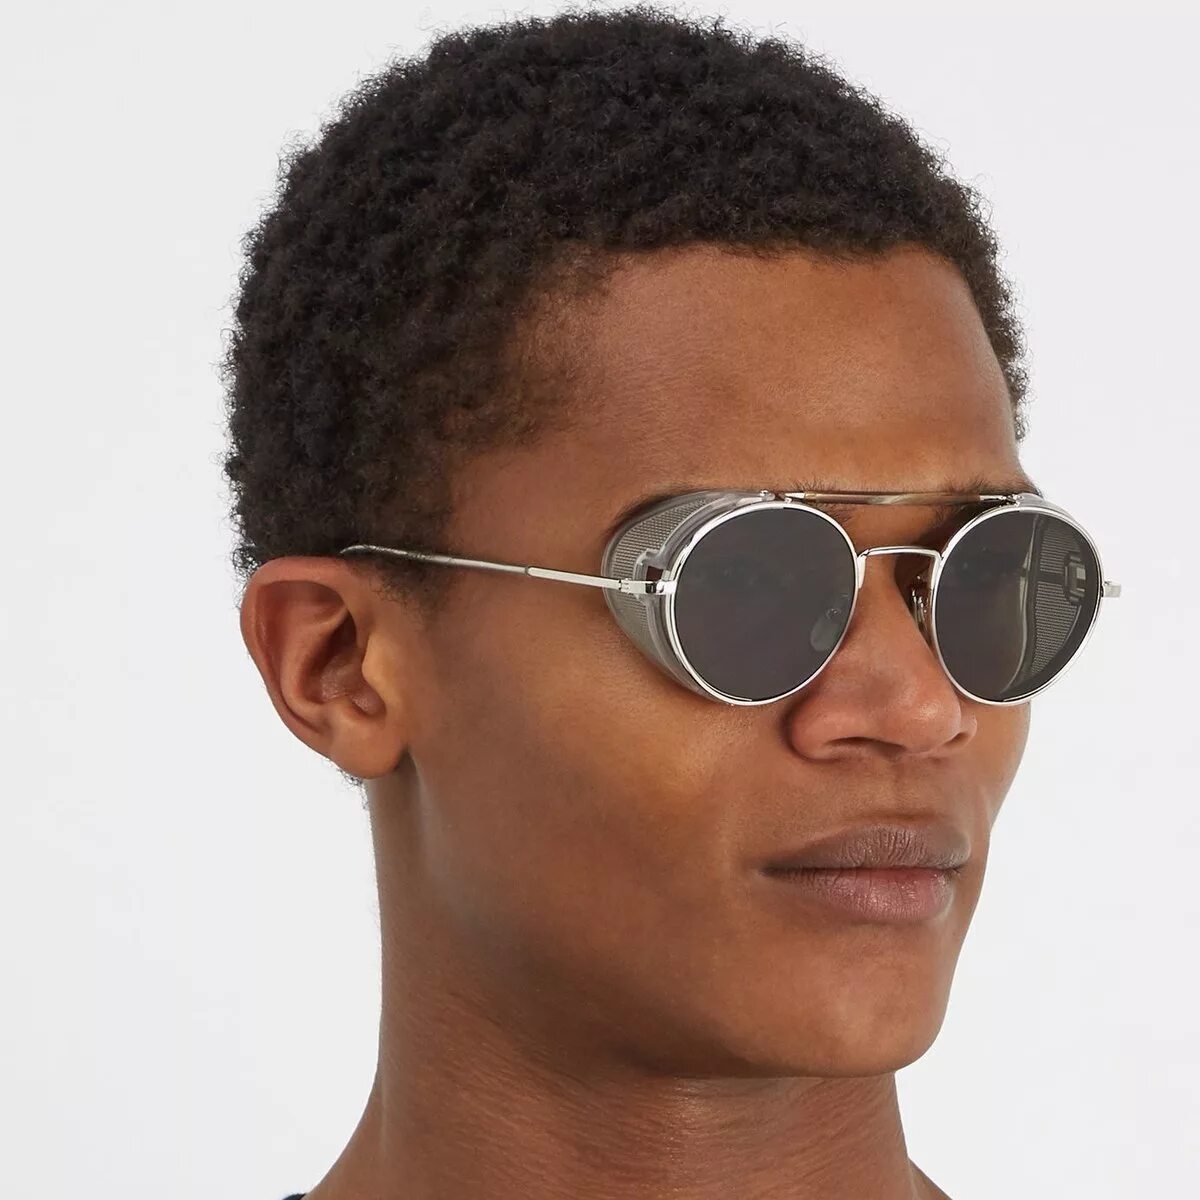 Очки round. Thom Browne очки мужские. Thom Browne Round Sunglasses. Очки Thom Browne 5523. Thom Browne очки солнцезащитные.